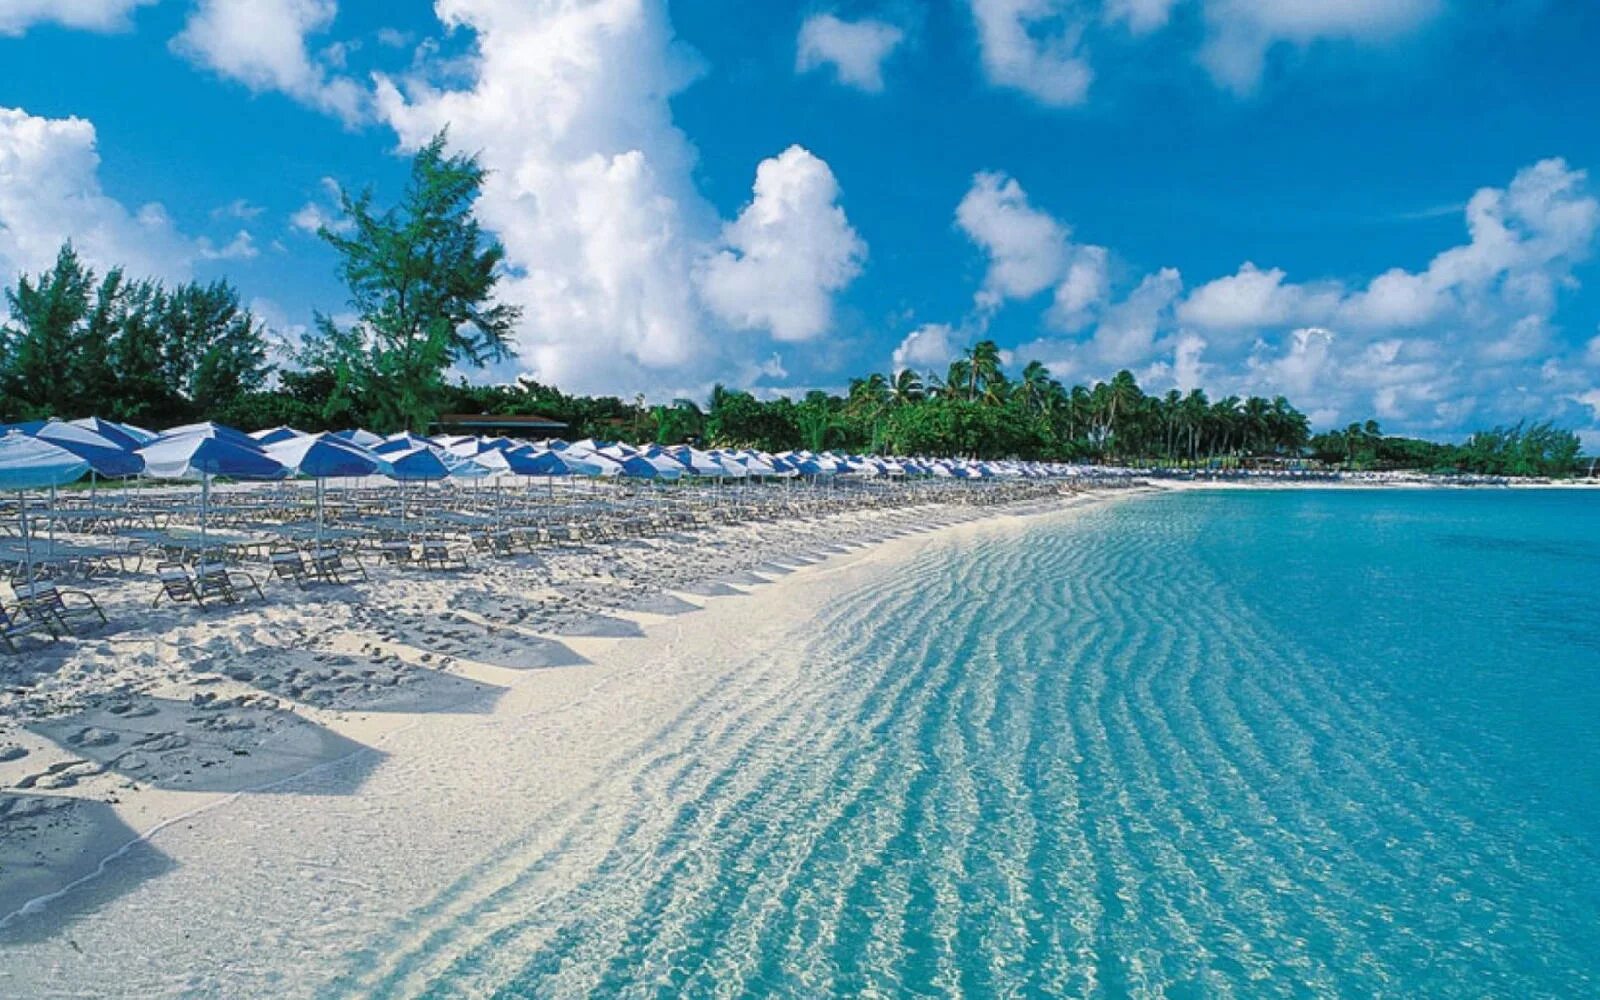 "Багамские острова". Нассау Багамские острова пляжи. Багамское мелководье, Багамы. Остров Парадайз Багамские острова.